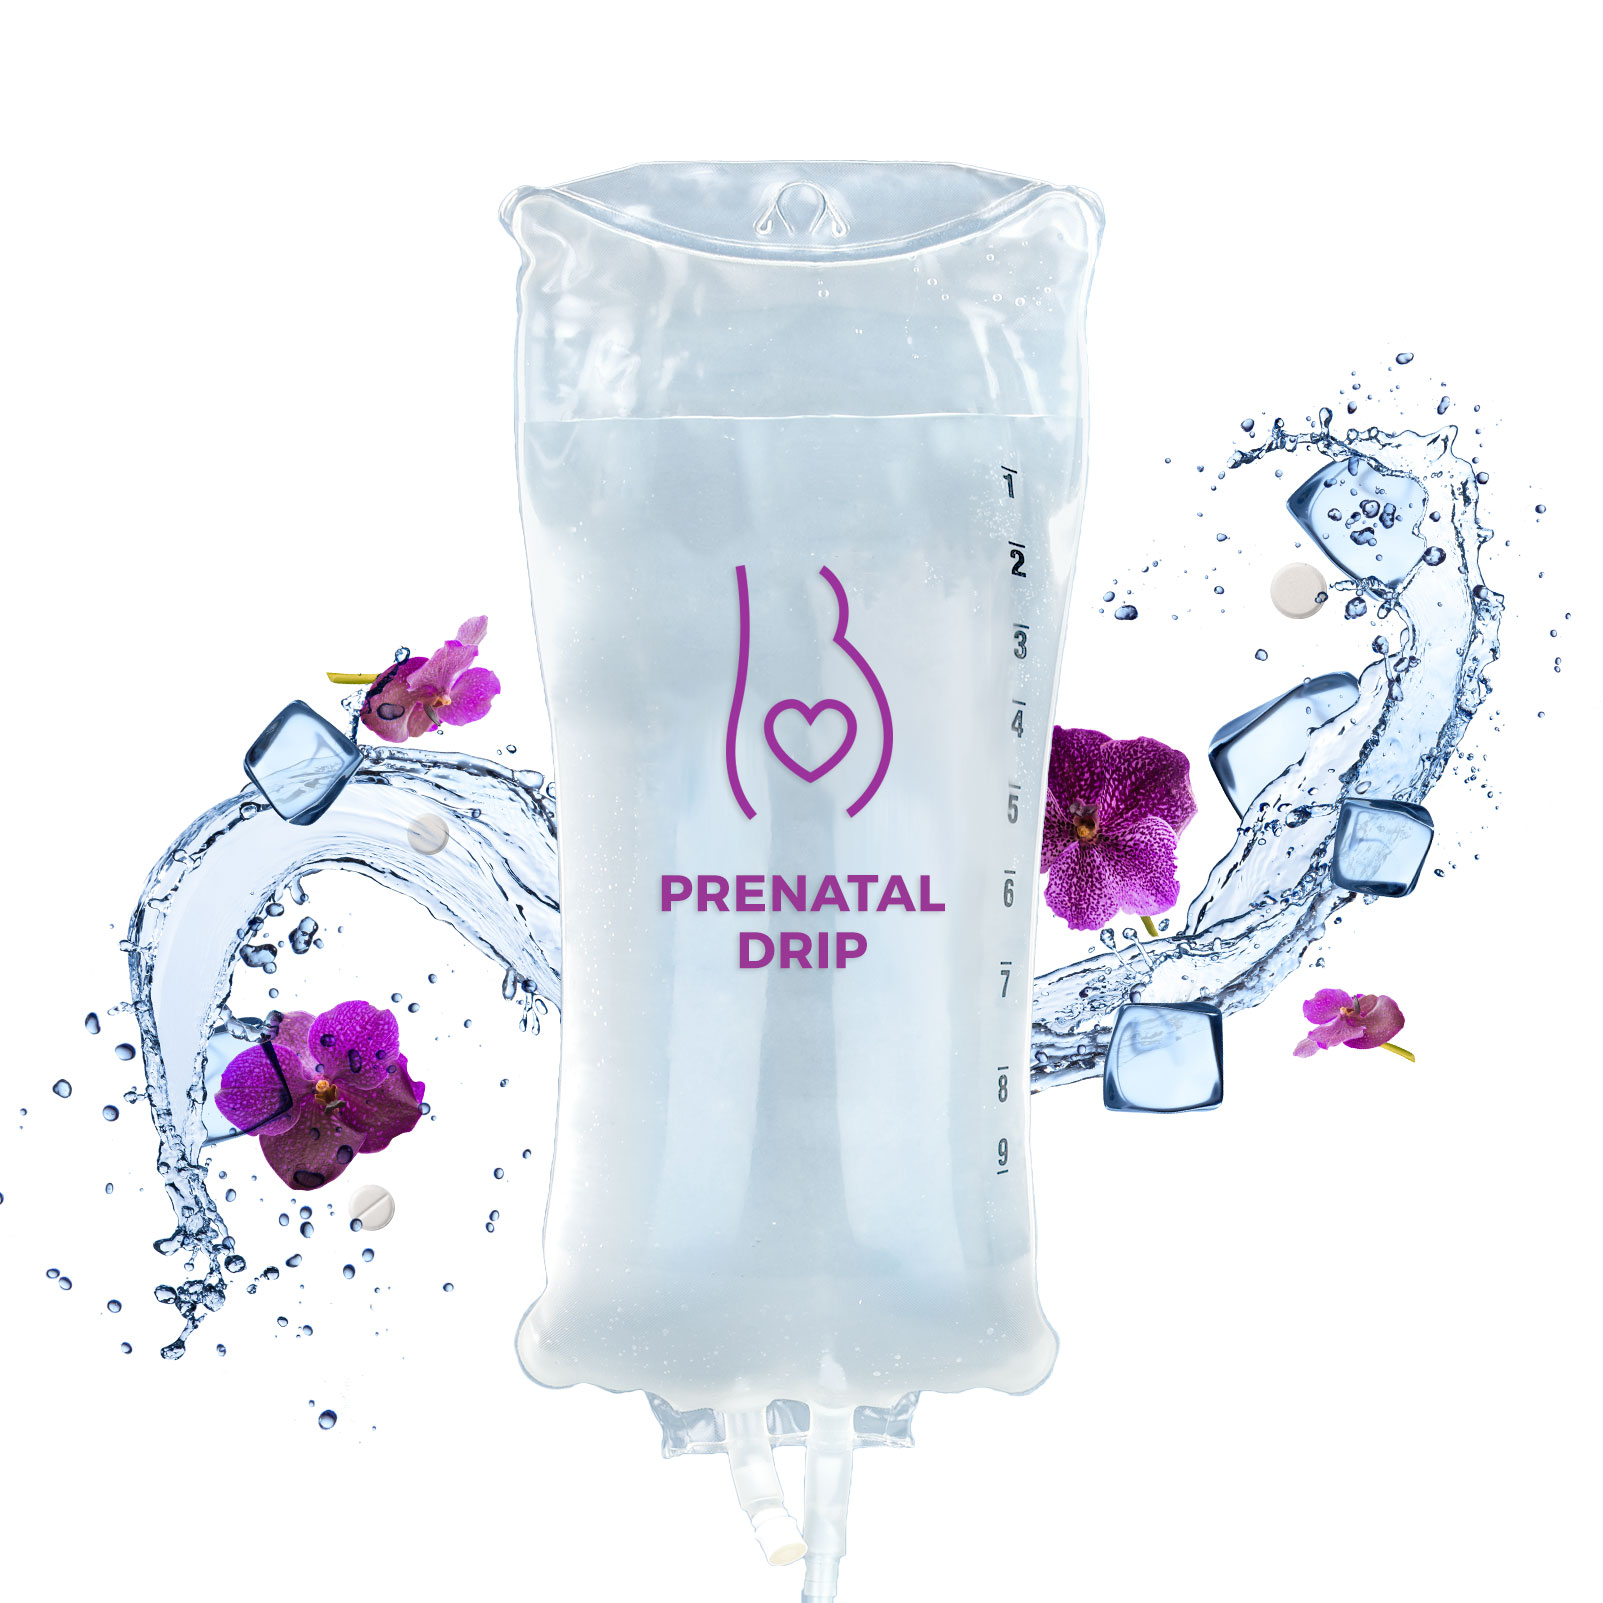 Prenatal IV Drip